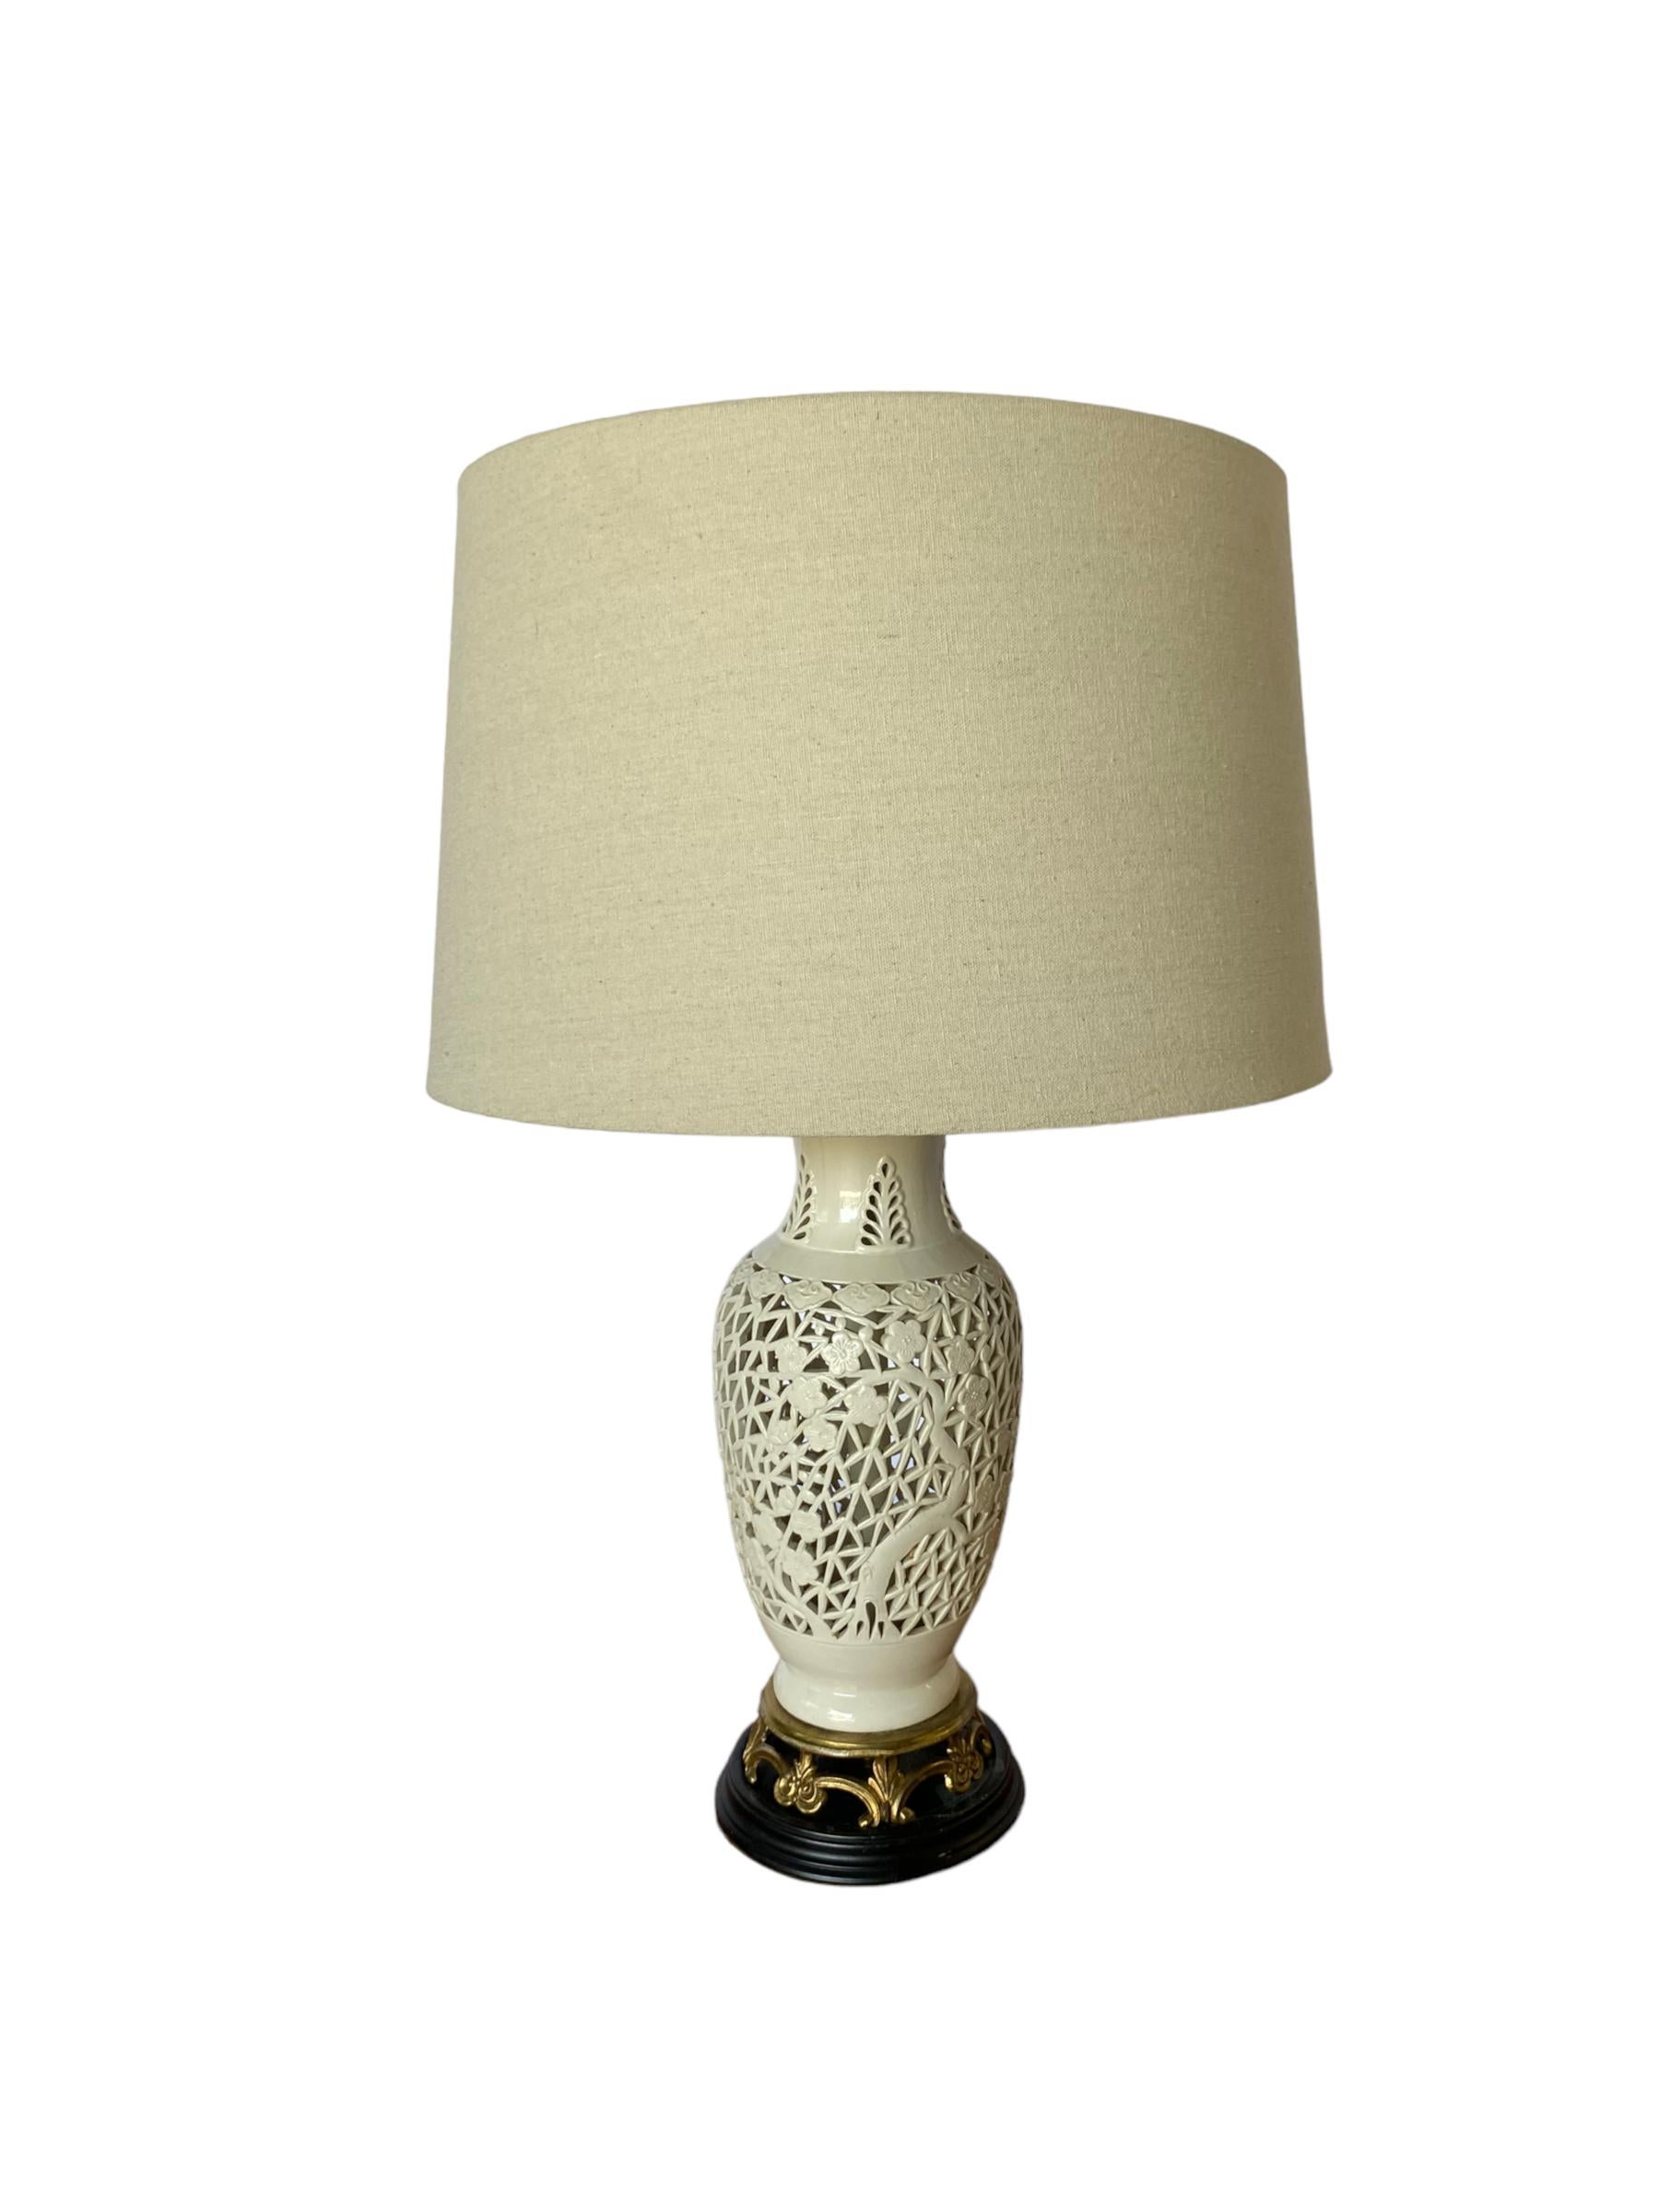 Blanc De Chine Pierced Porcelain Table Lamp with Floral Motif 2